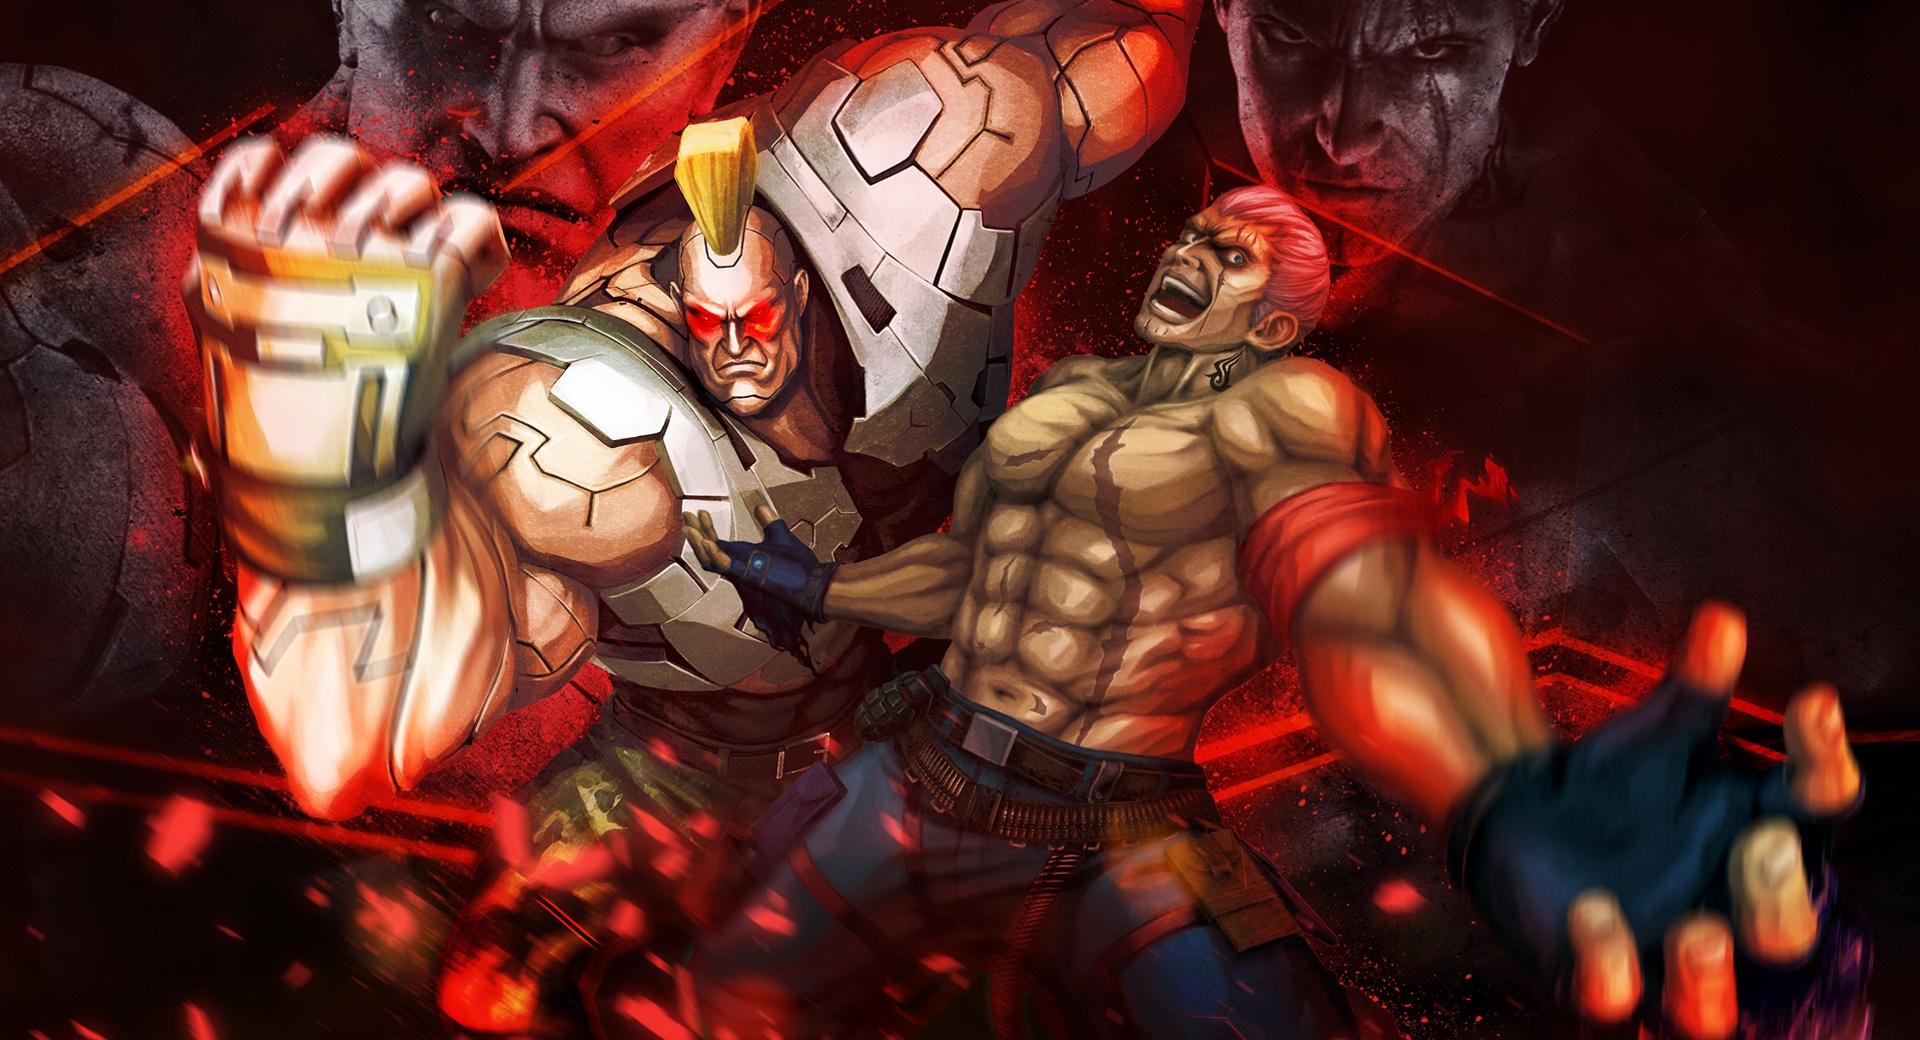 Street Fighter X Tekken - Bryan Jack-X at 2048 x 2048 iPad size wallpapers HD quality